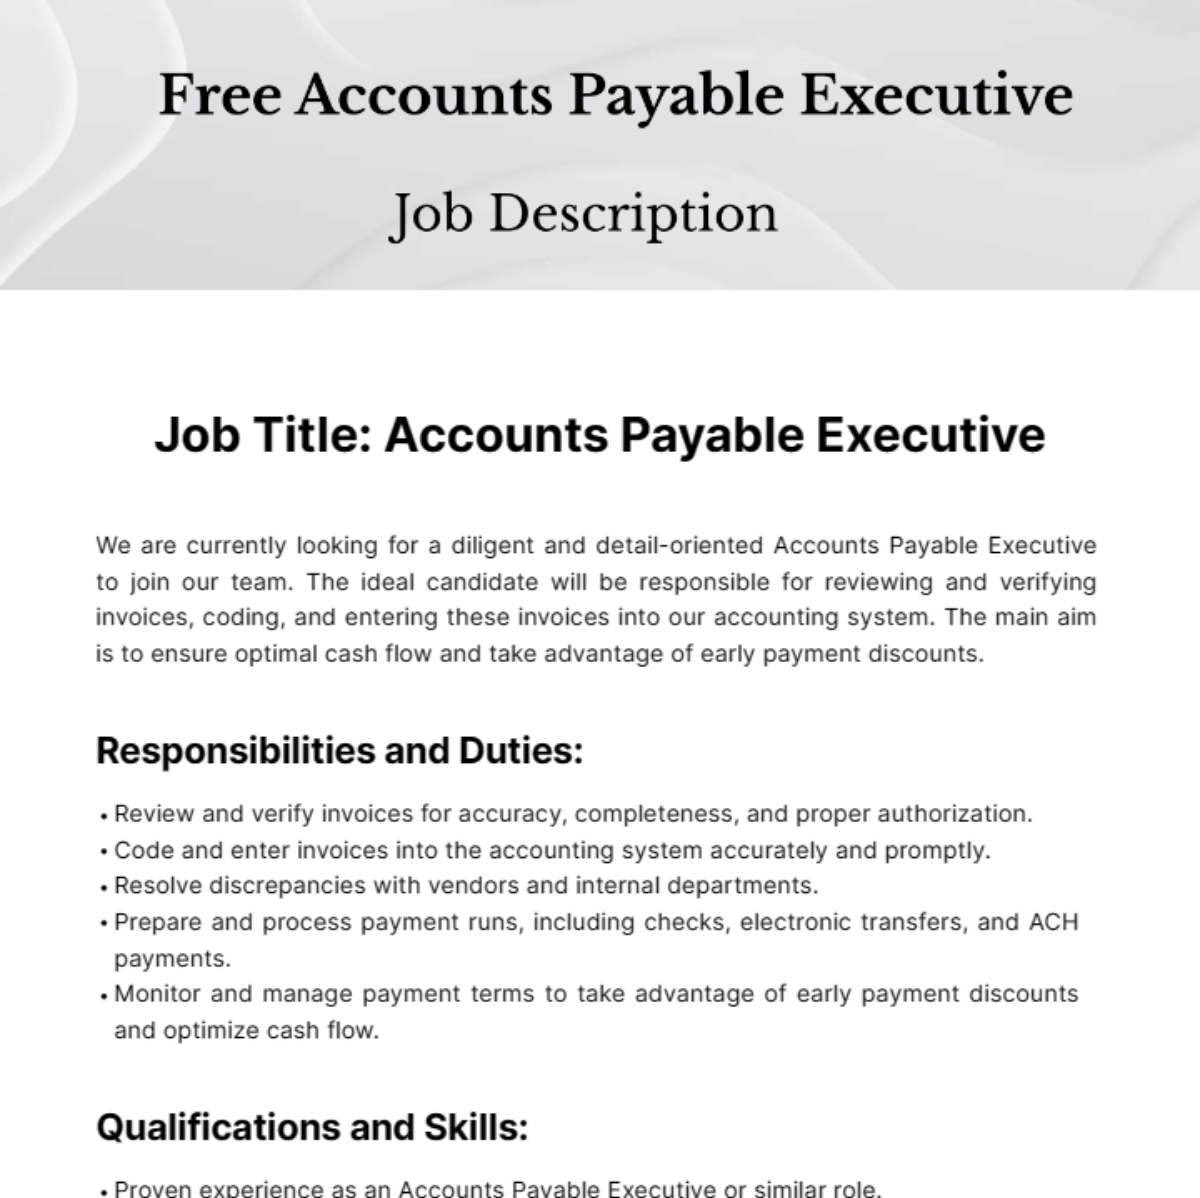 Free Accounts Payable Executive Job Description Template